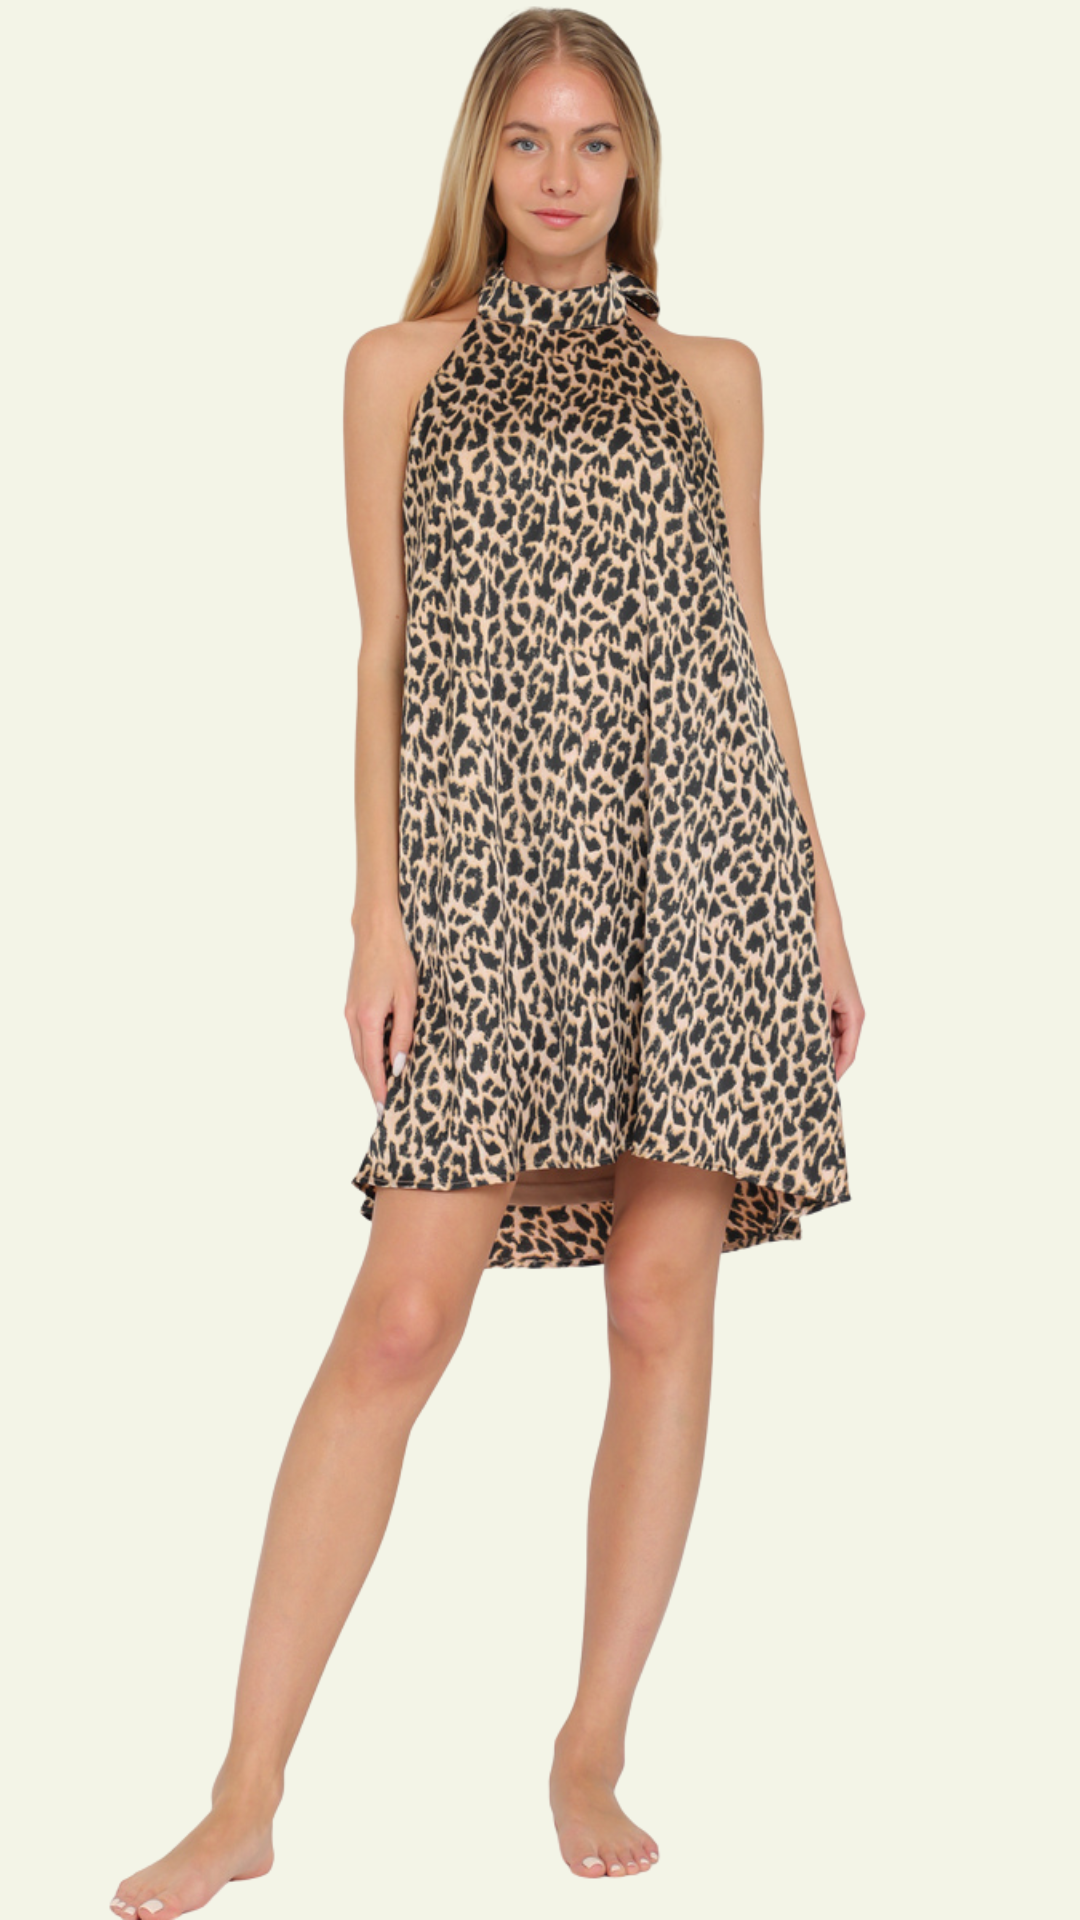 Leopard Tie Back Mini Dress